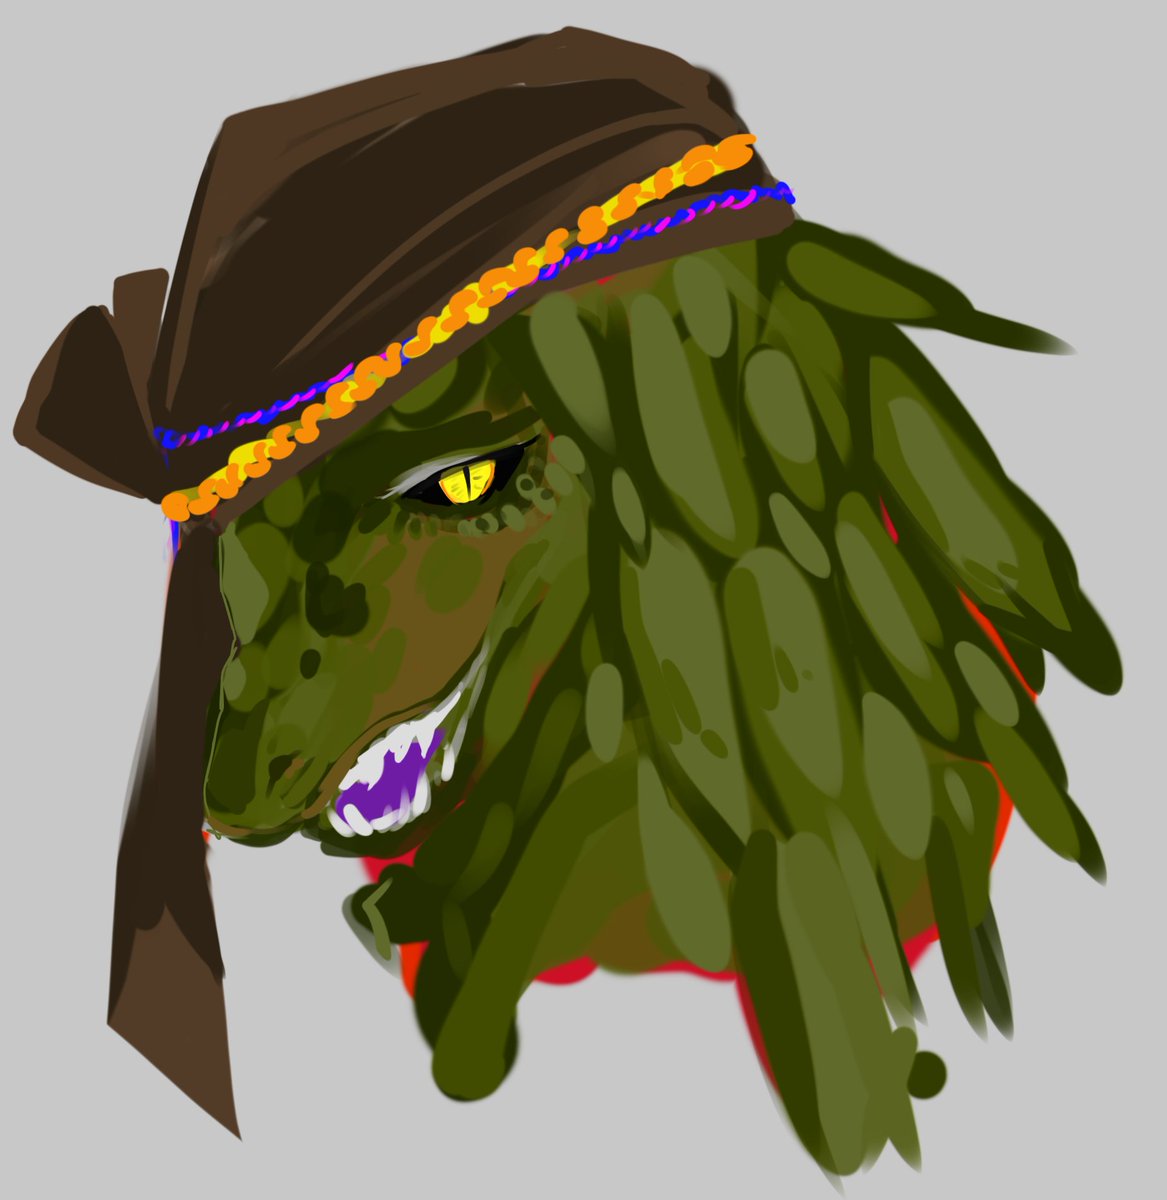 「パキラ・デルミレヴ┗祖先の竜/グリーン[毒] 深い緑の長髪、金色の目、紫の舌 僕」|結井ななきそ🦖💐TRPGと創作のイラスト